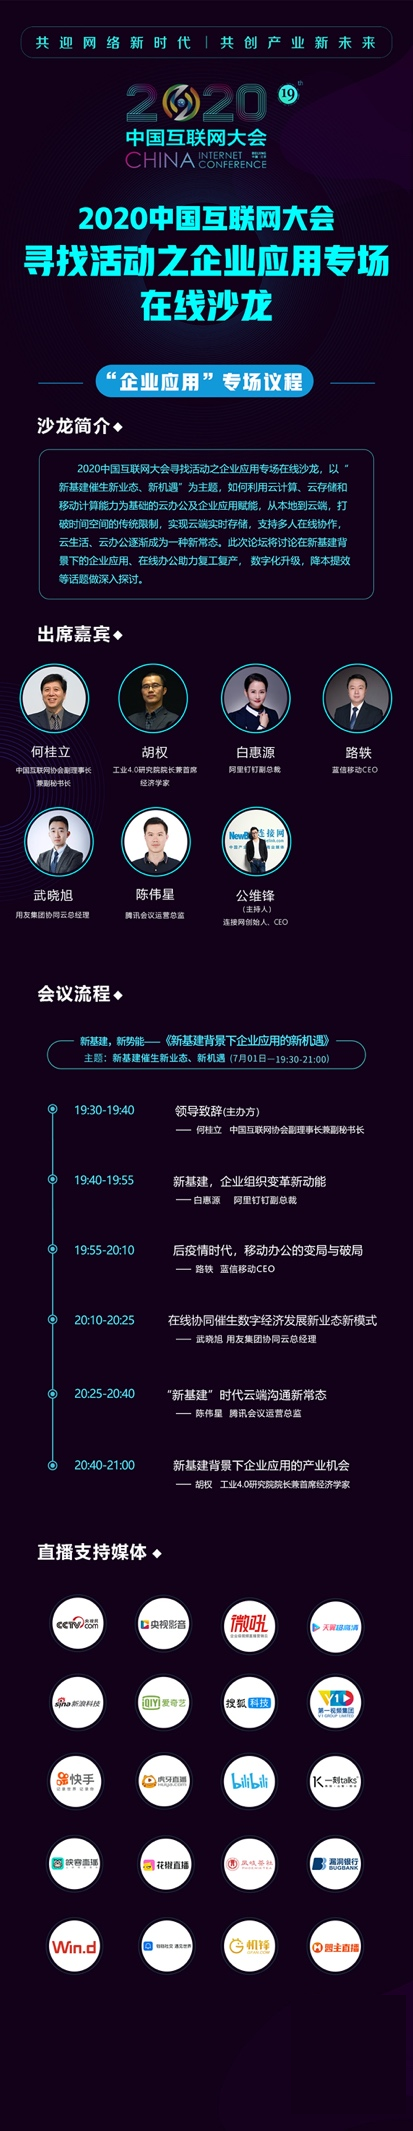 2020中国互联网大会 | 第四场会前沙龙企业应用专场线上举行